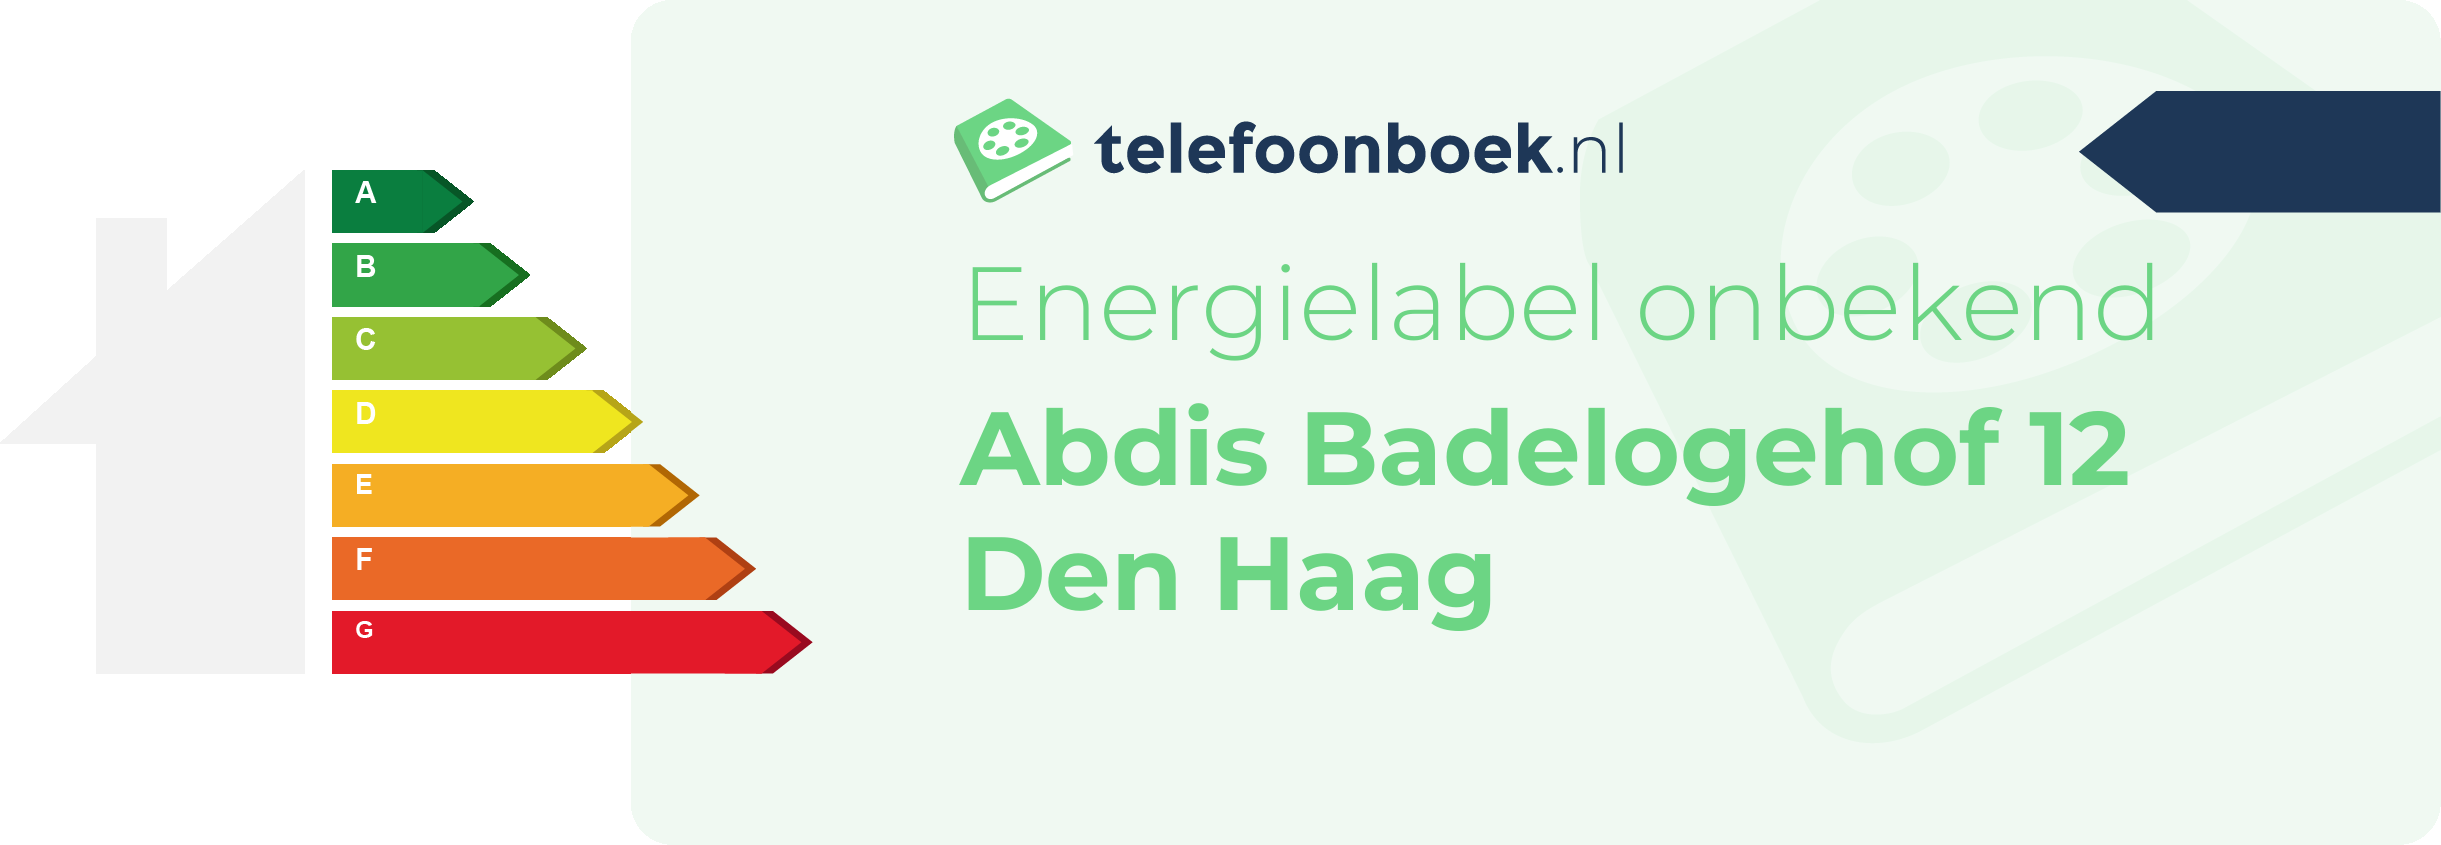 Energielabel Abdis Badelogehof 12 Den Haag